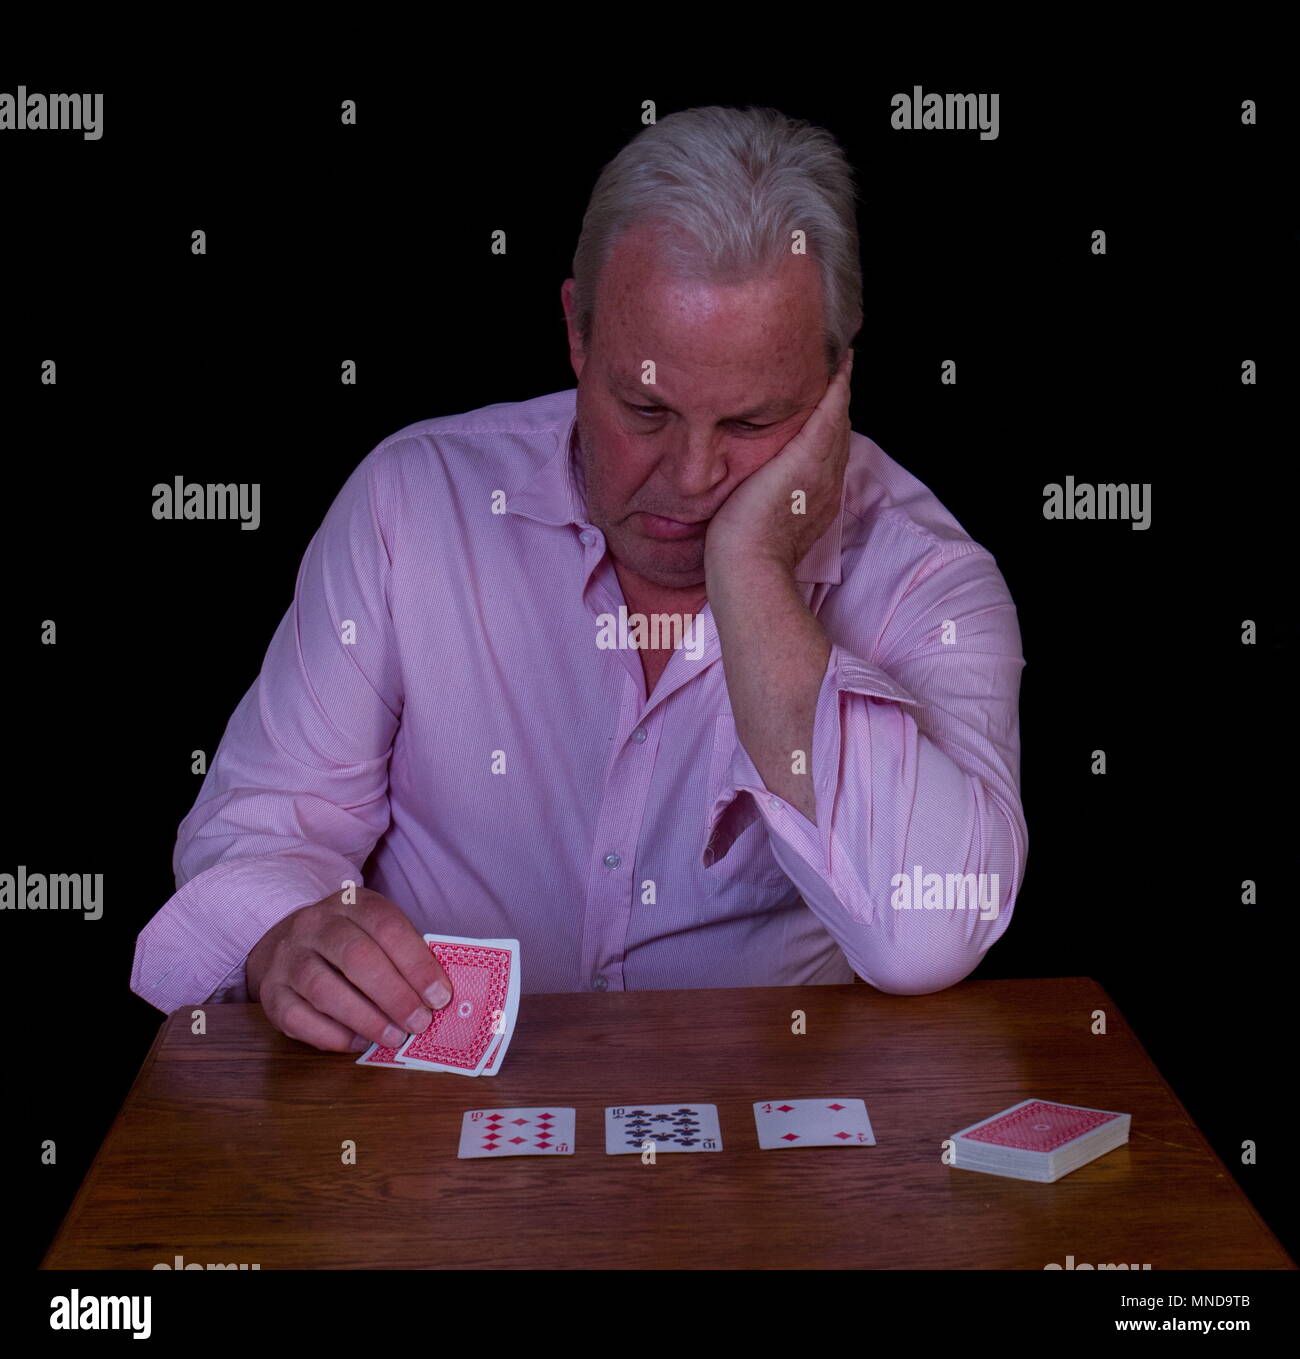 Uomo anziano con i capelli grigi cercando infelicemente presso la sua mano di poker immagine con spazio copia contro uno sfondo nero Foto Stock